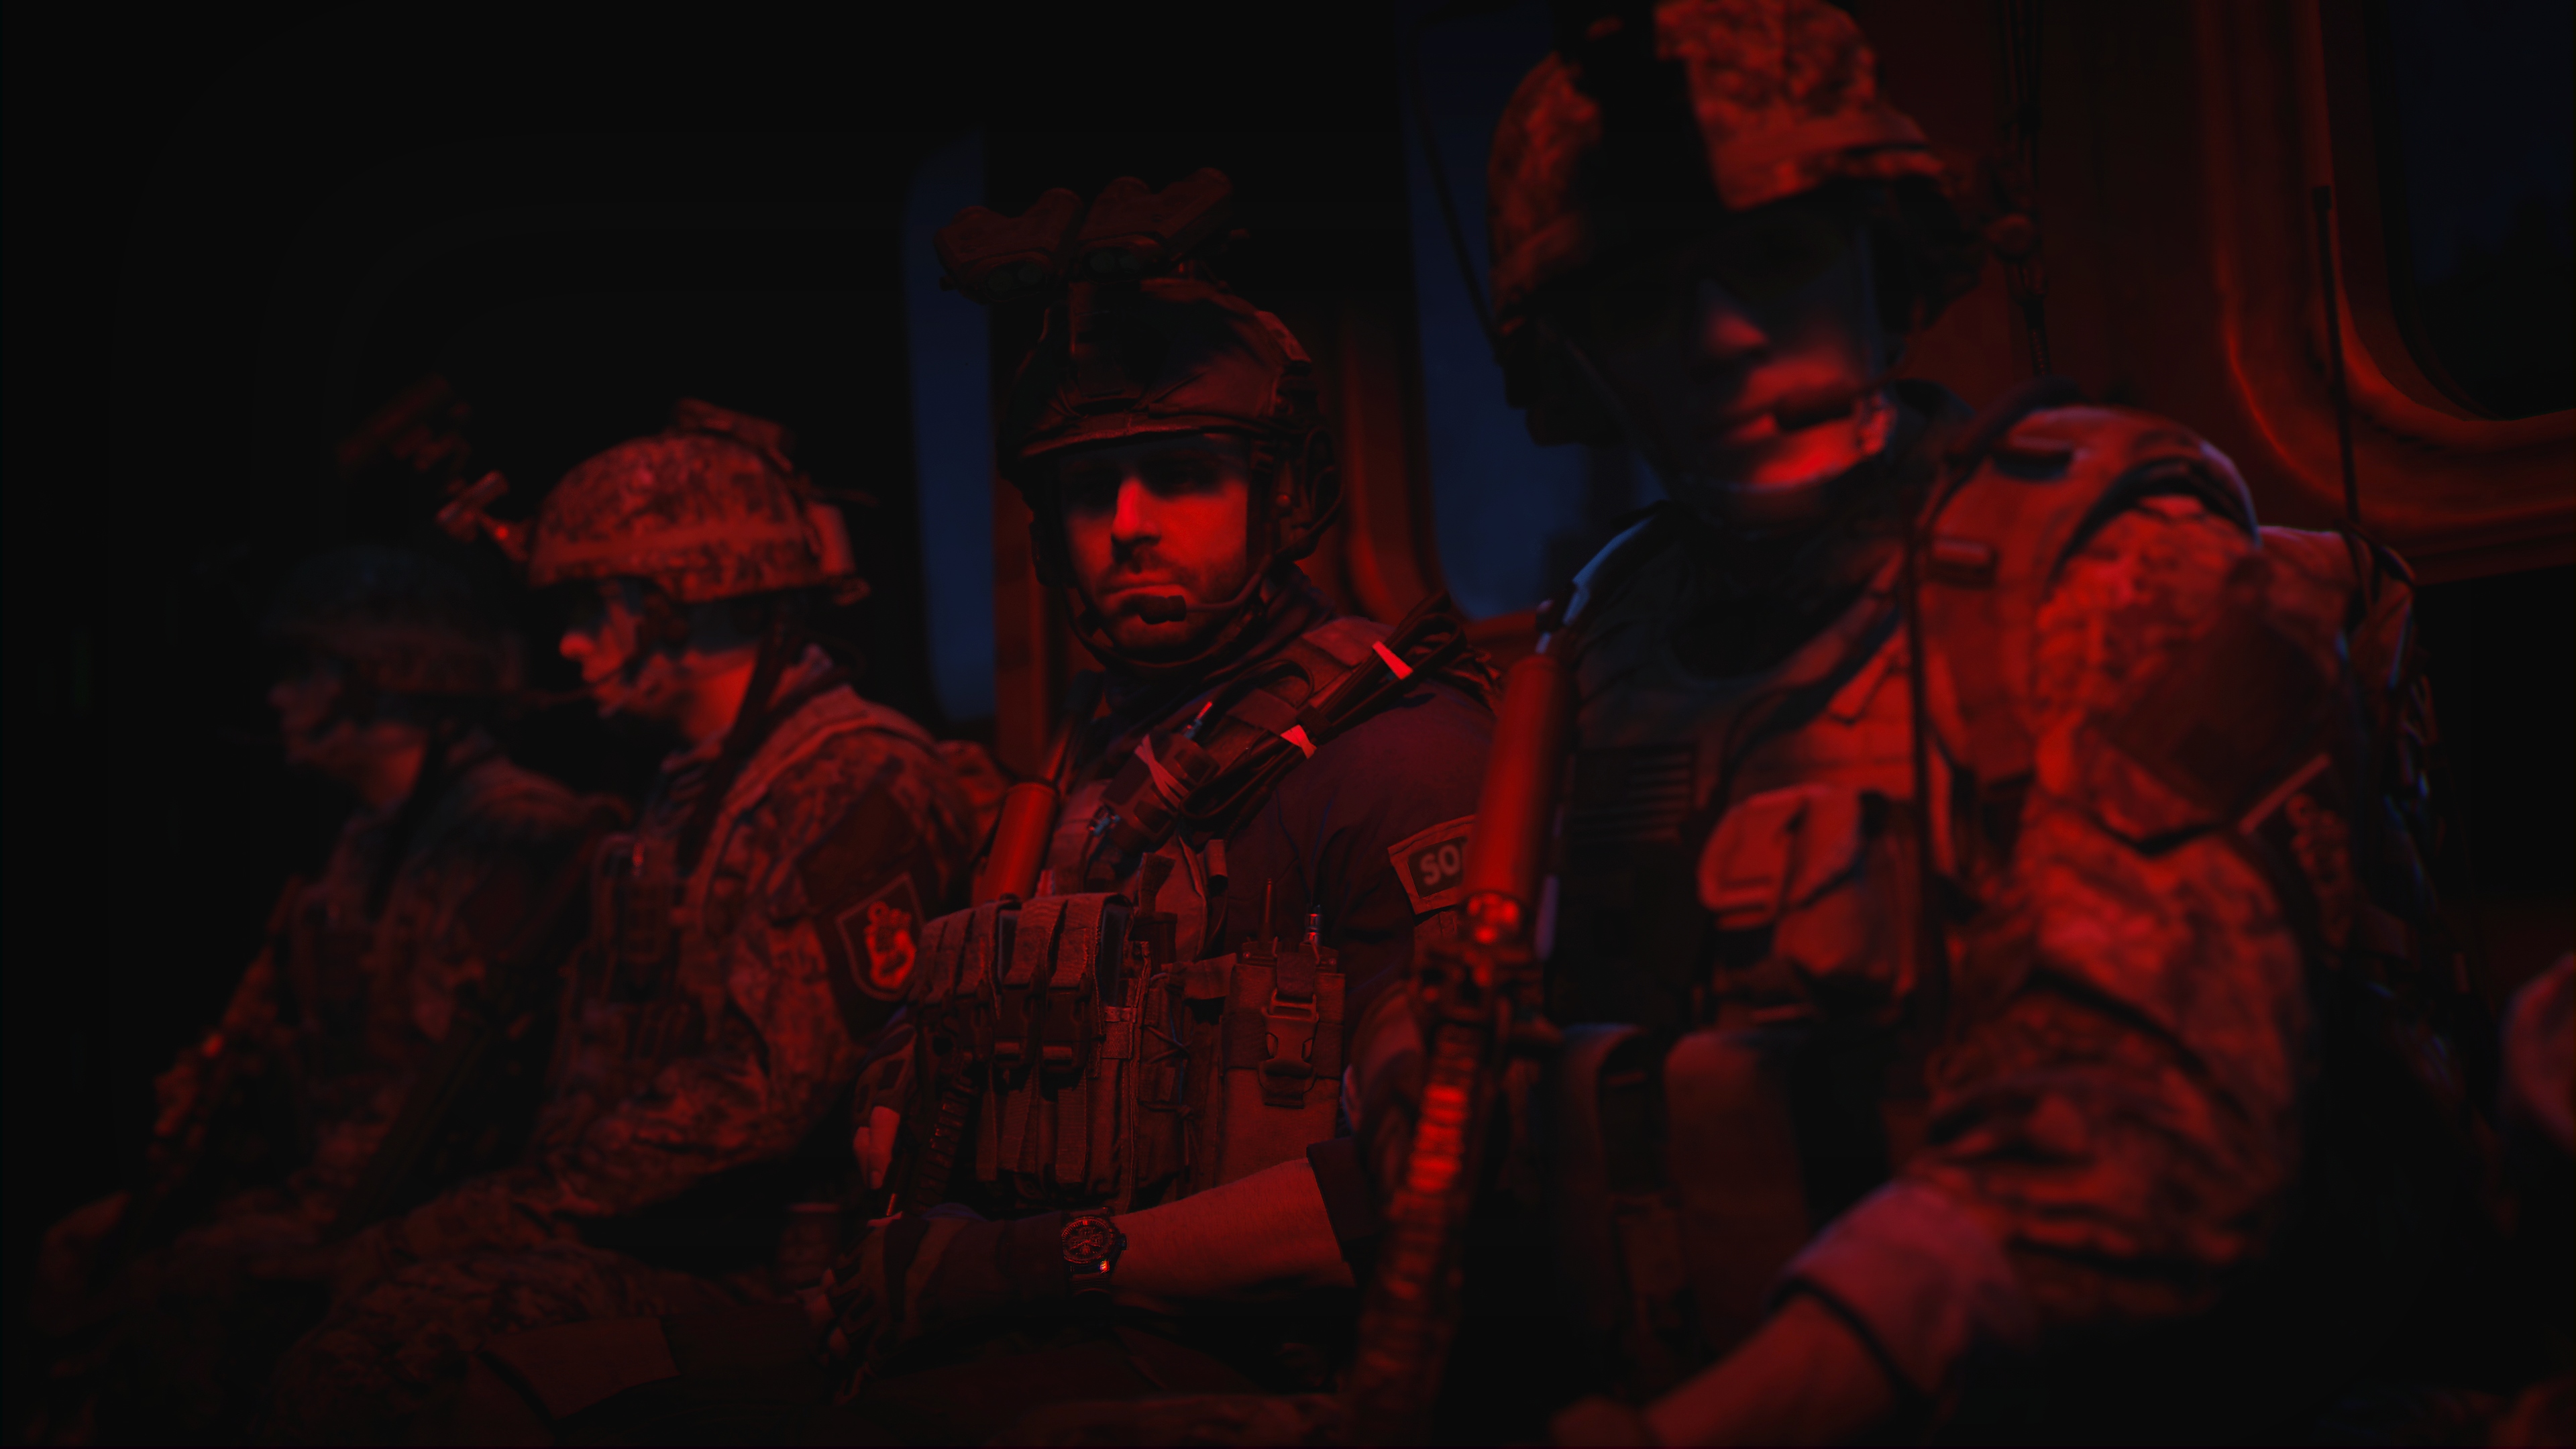 Call of Duty: Modern Warfare 2 2022 екранна снимка, показваща трима герои, стоящи на червена светлина